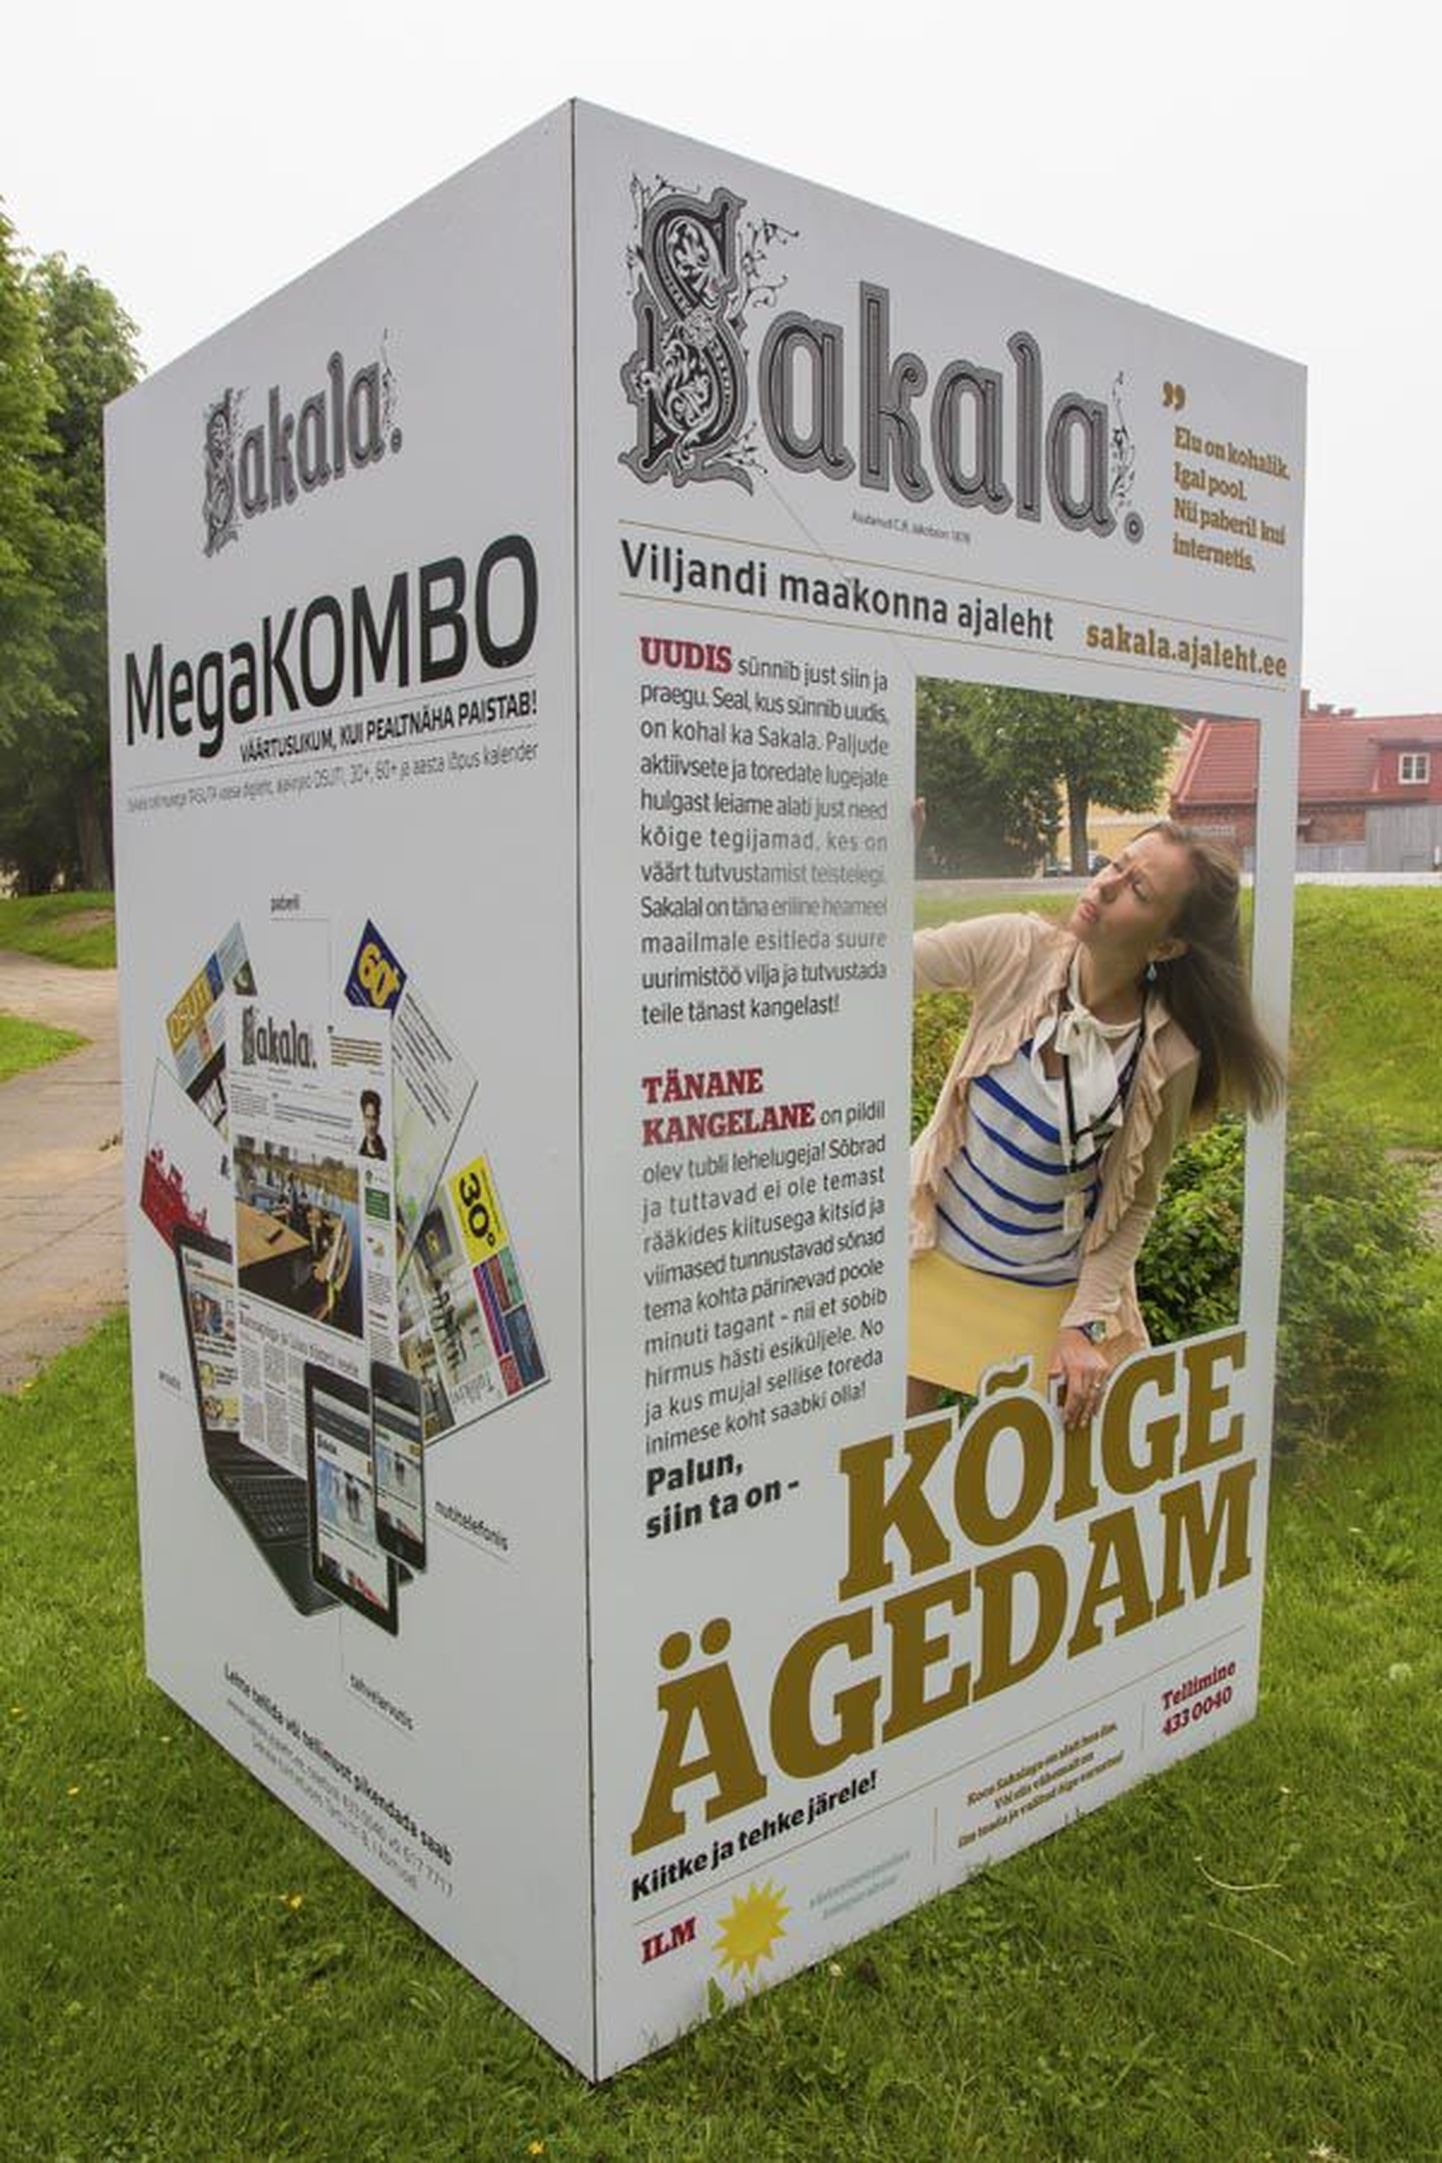 Sakala reklaam asub Viljandis Tartu tänaval otse Sakala toimetuse maja ees. Selleks, et olla kõige ägedam, tuleb vaid esiküljel koht sisse võtta.